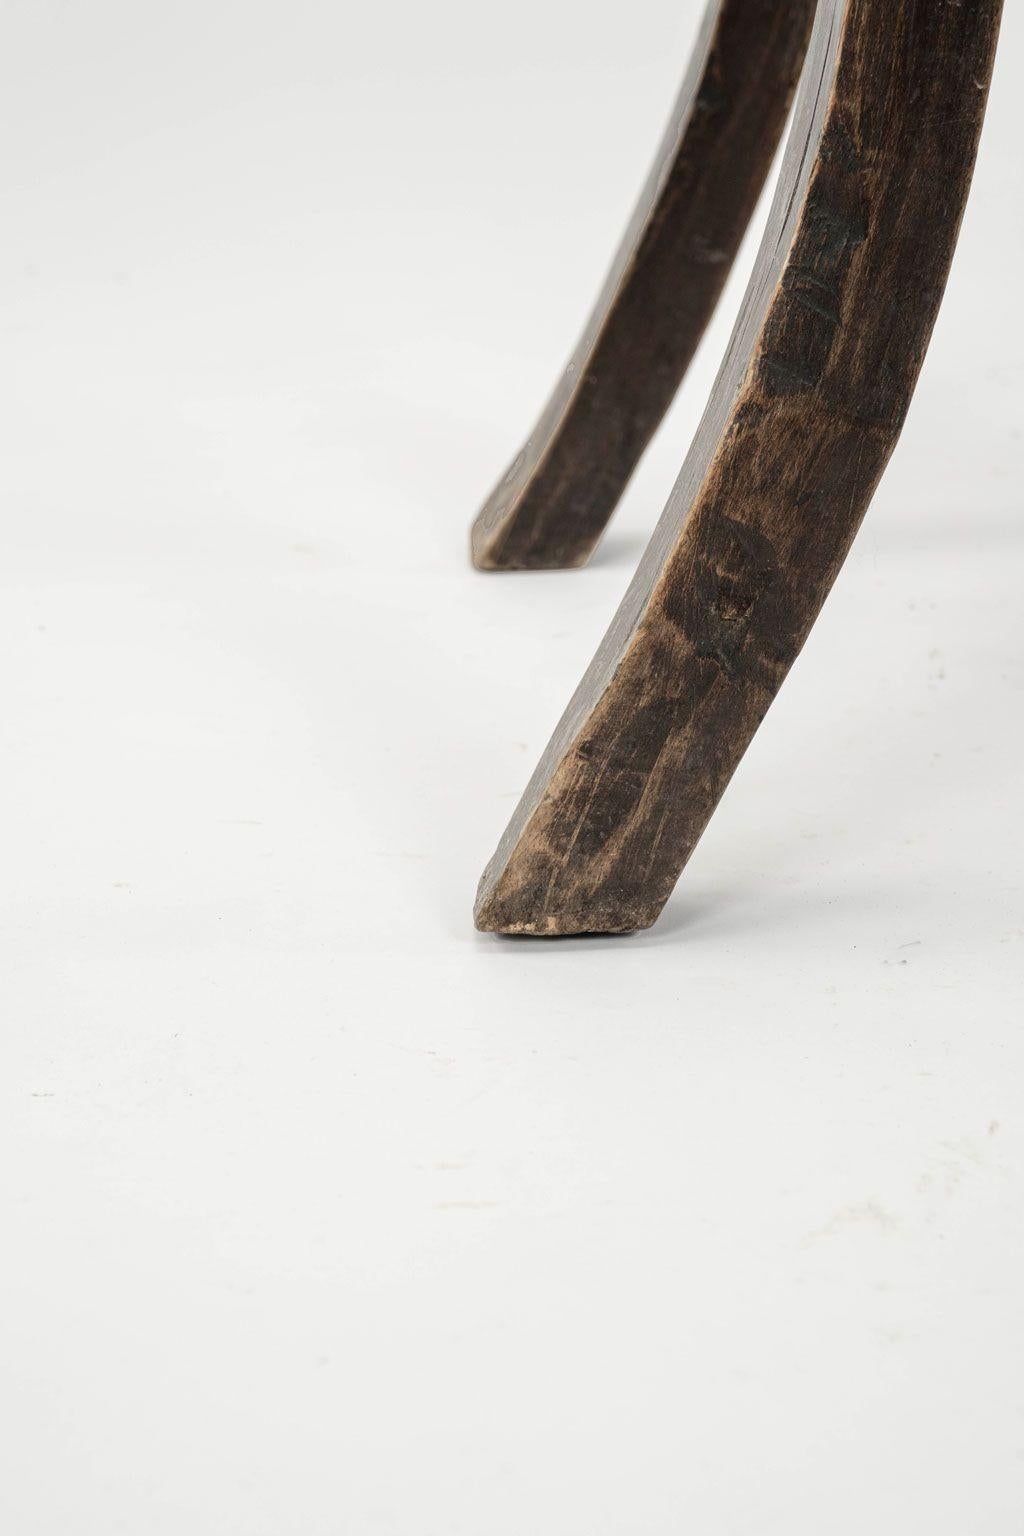 Primitive Welsh Splayed Leg Stool For Sale 4